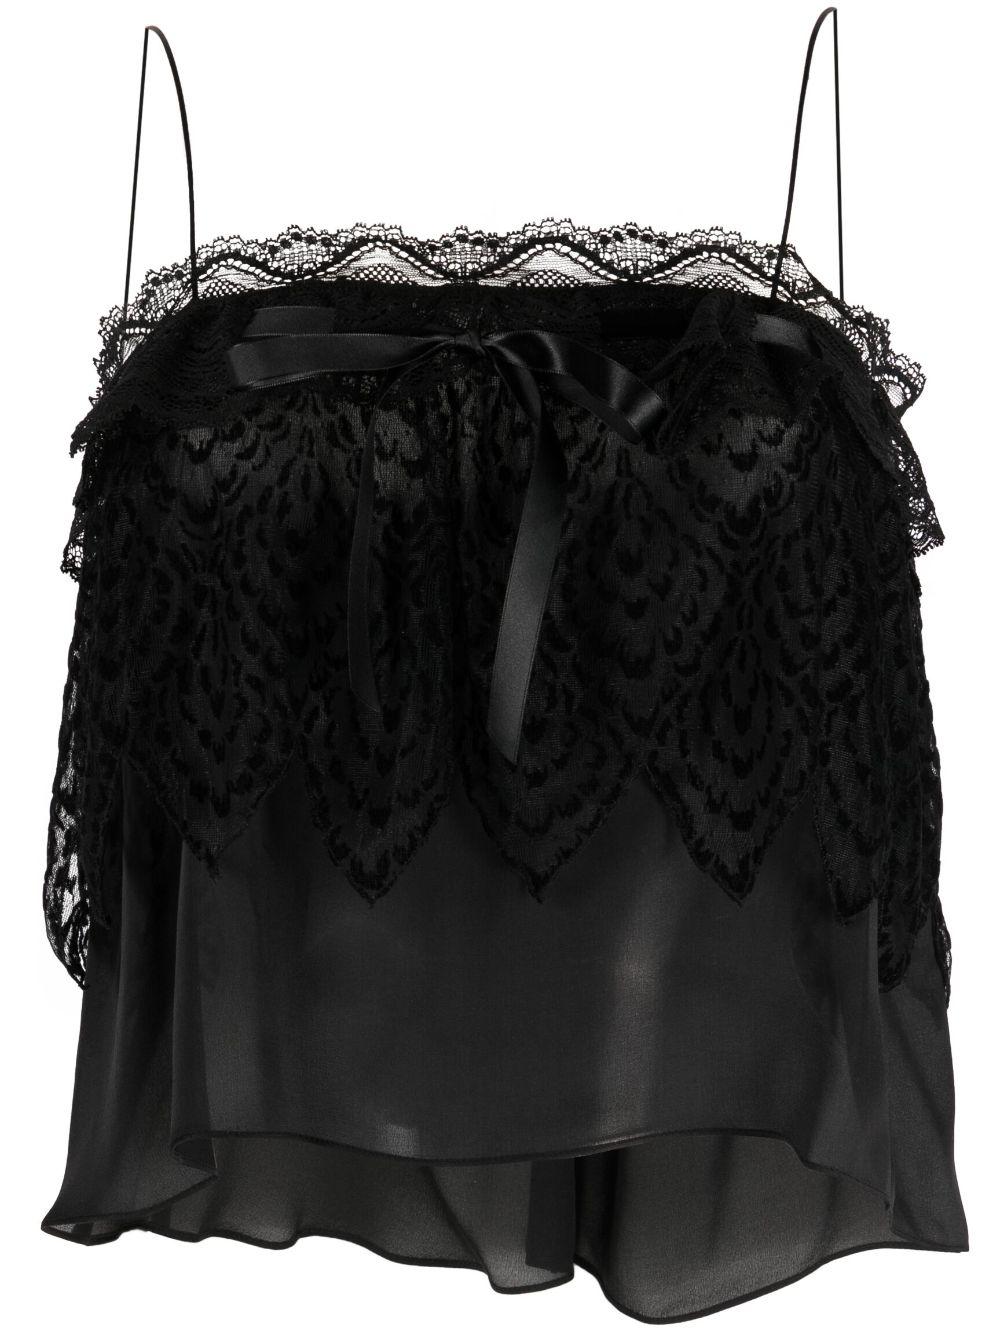 Yves Saint Laurent Evening Black Silk Lace Top For Sale 3